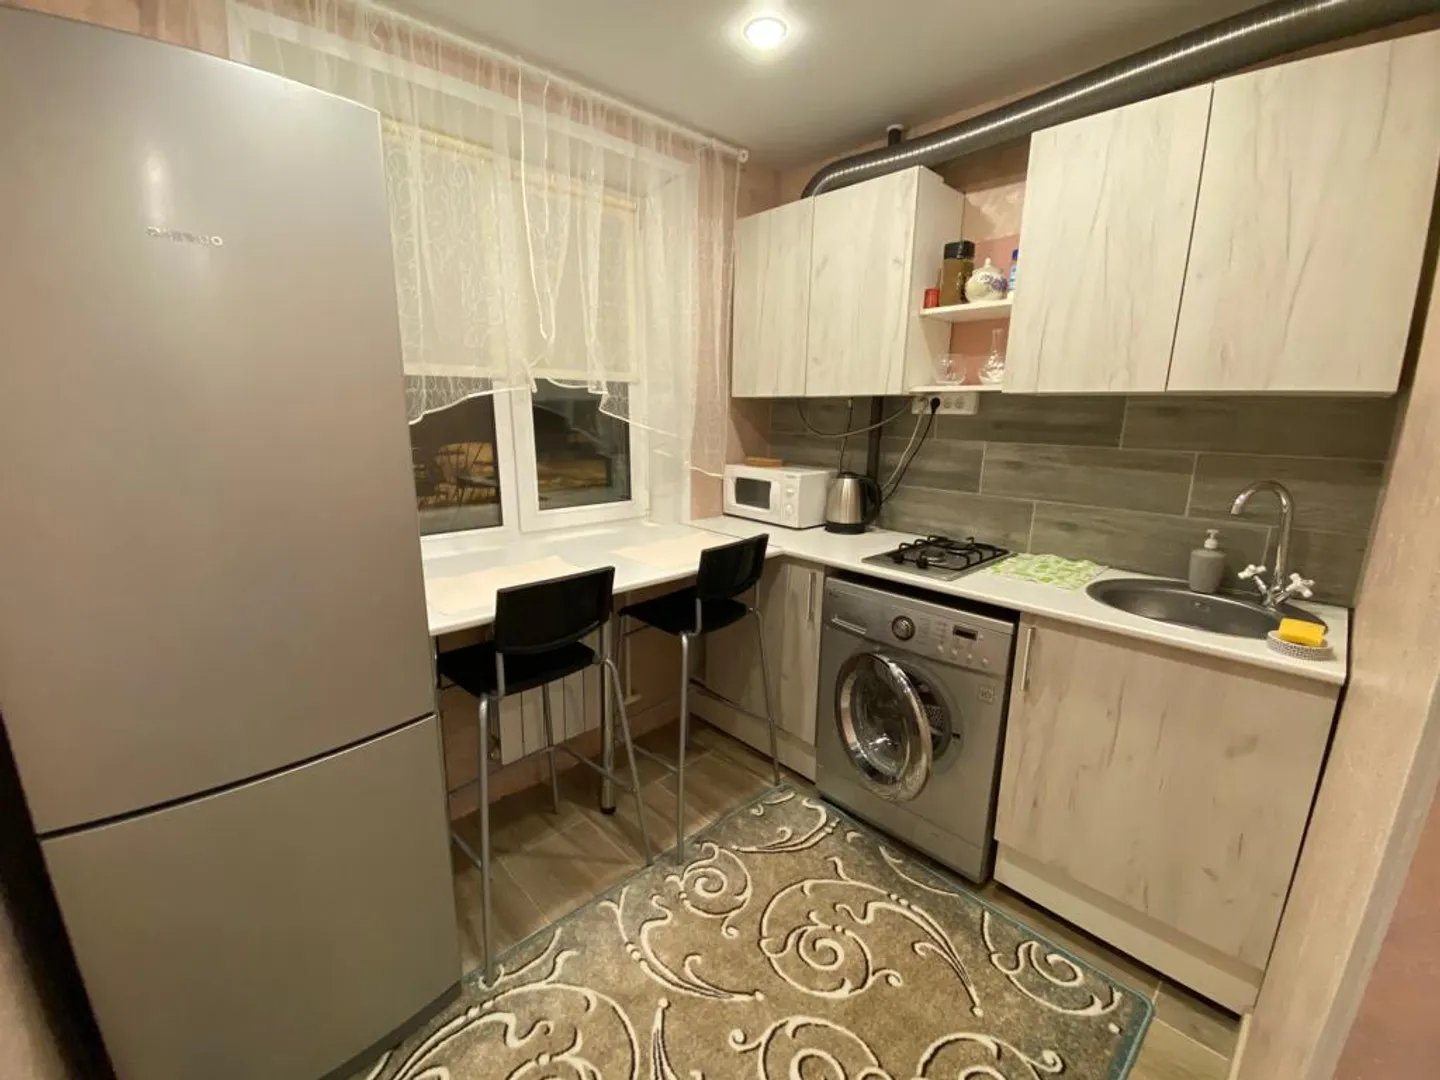 Уютная кухня. Есть микроволновая печь, холодильник, электрический чайник, газовая плита и стиральная машина 